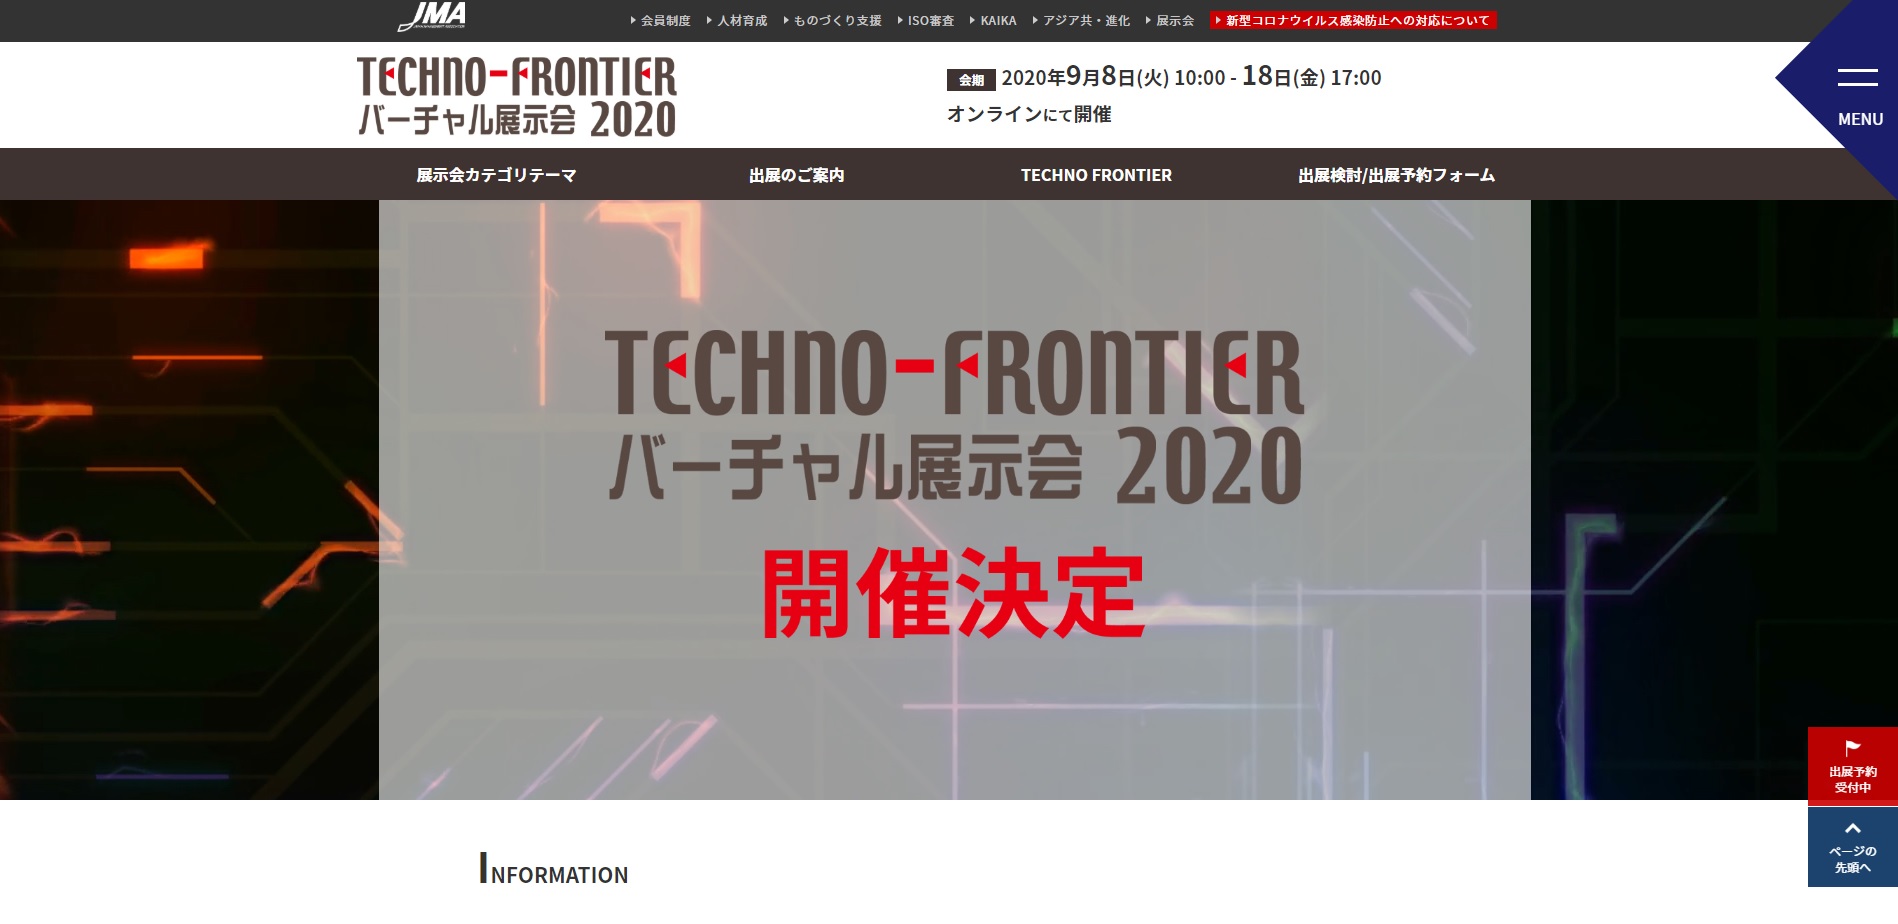 TECHNO-FRONTIER、9月にオンライン開催が決定